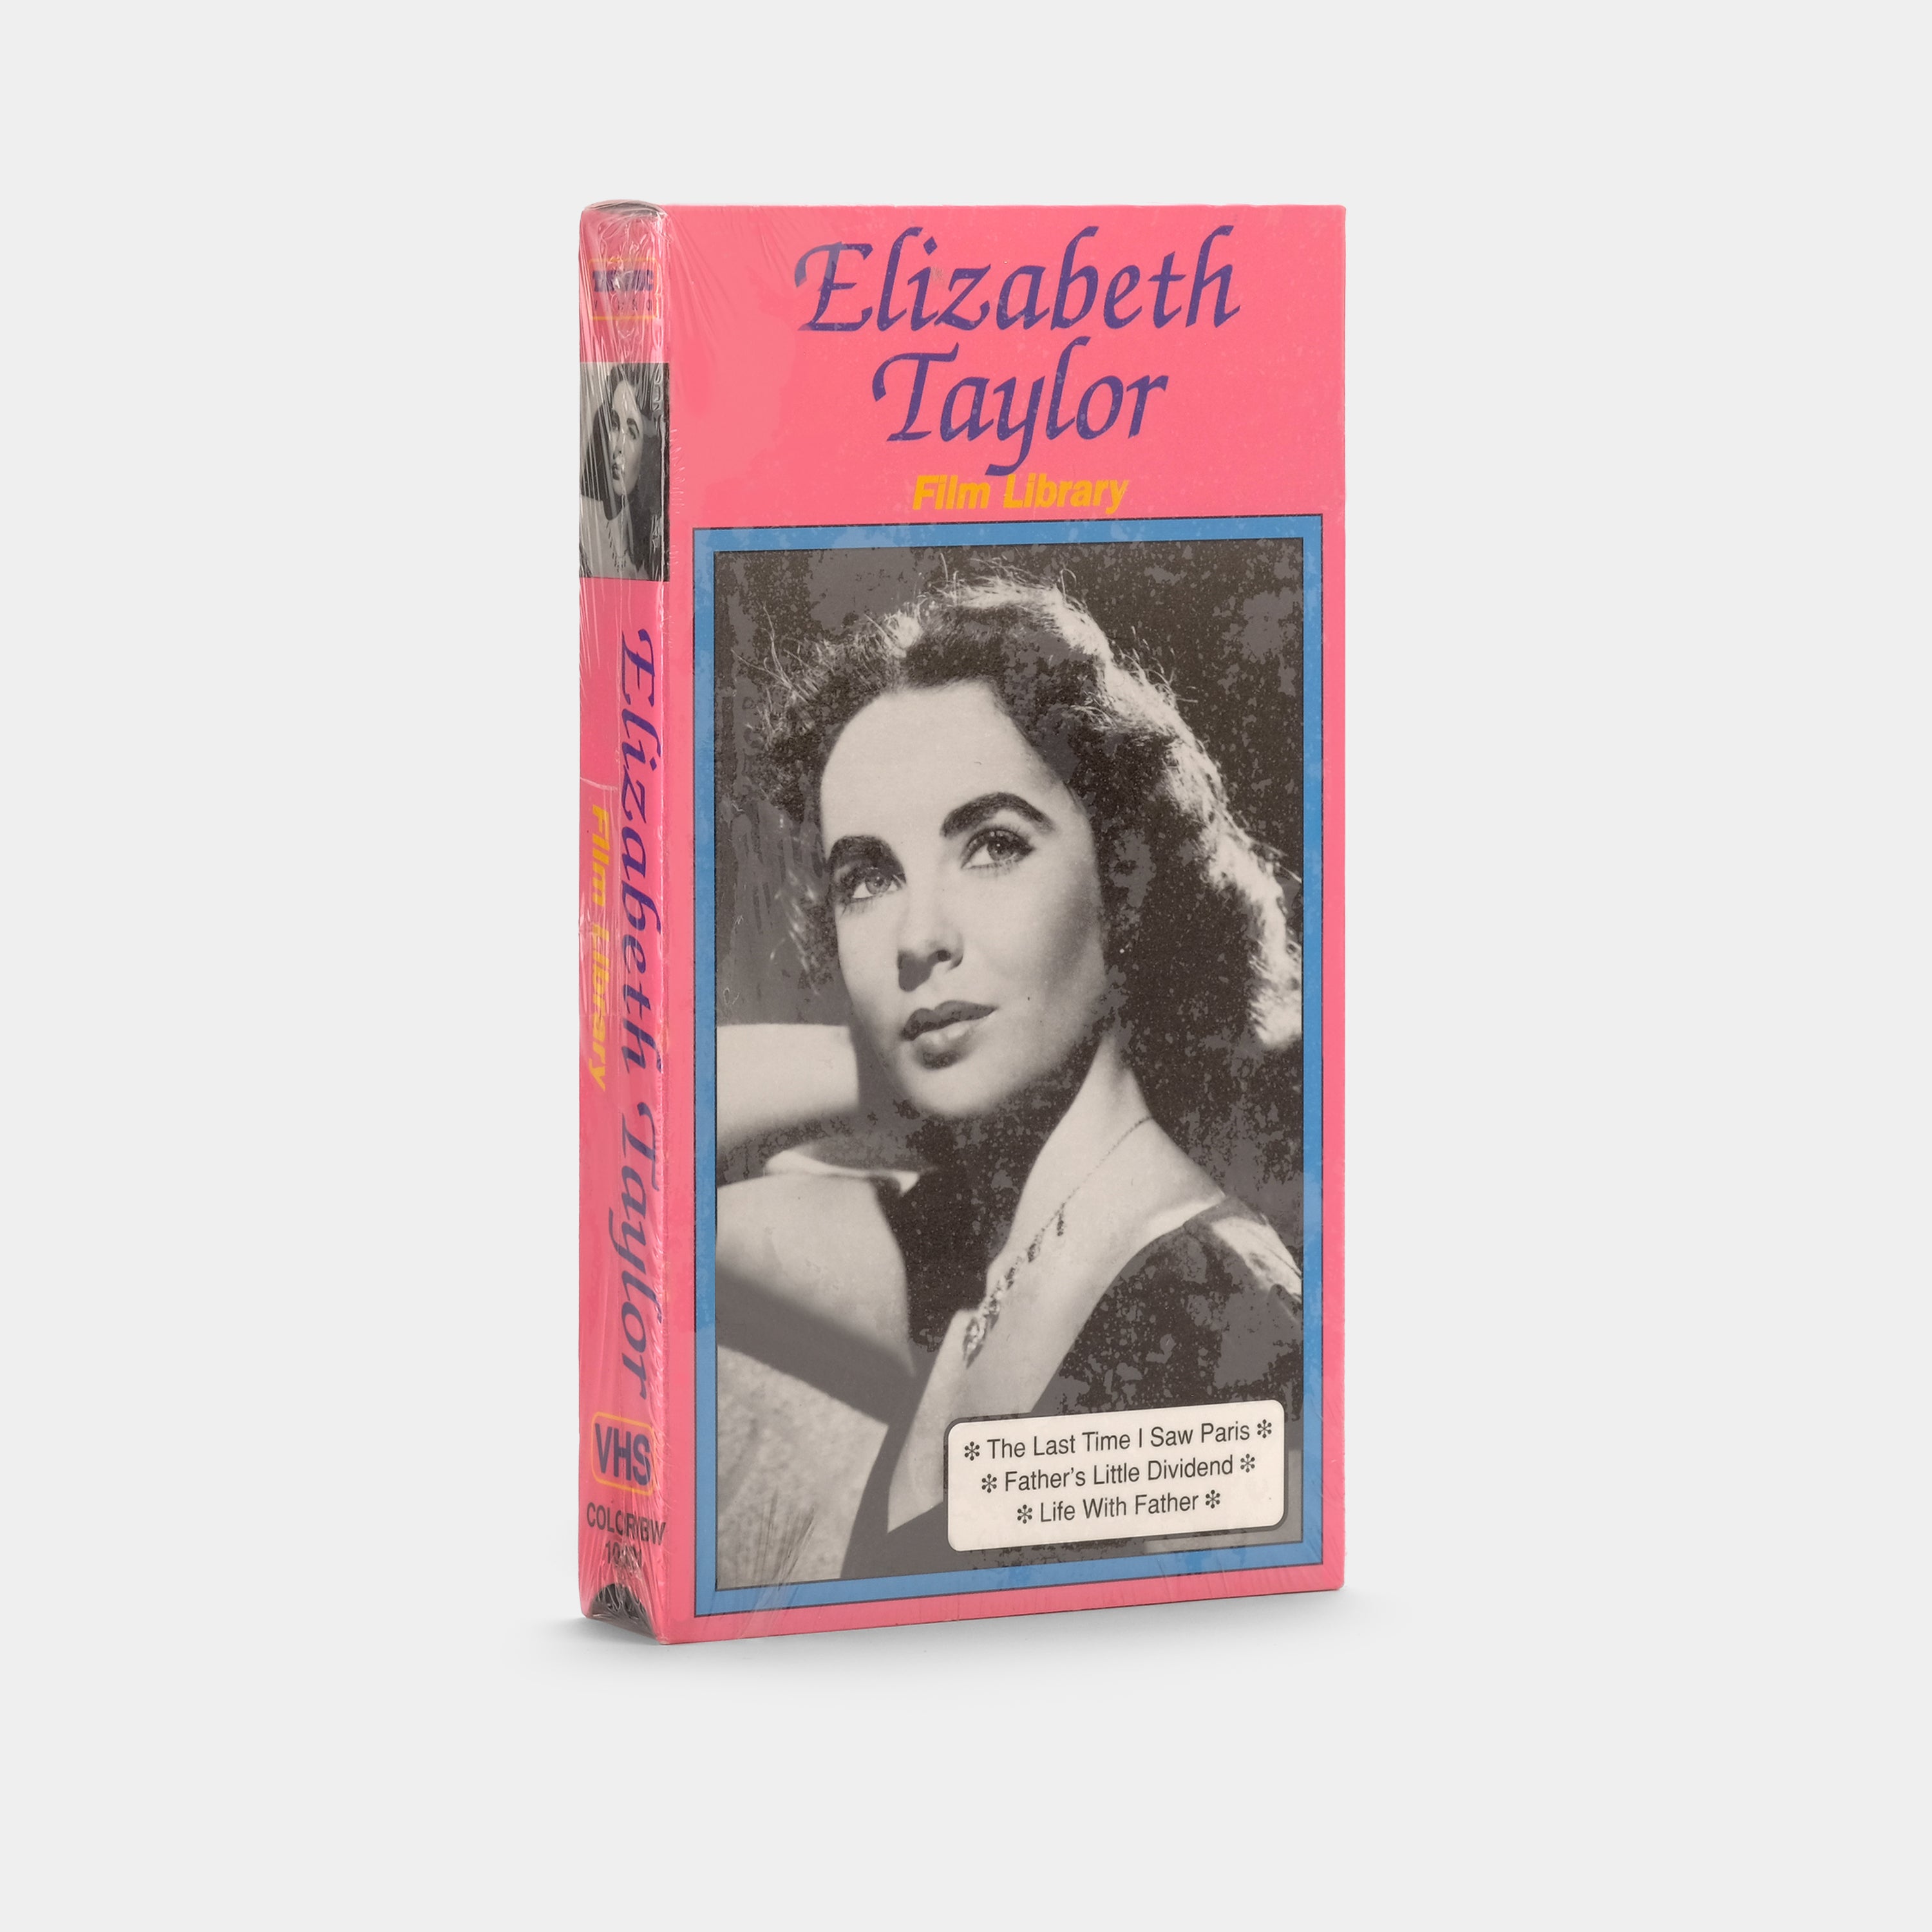 Elizabeth Taylor: Film Library (Sealed) VHS Tape